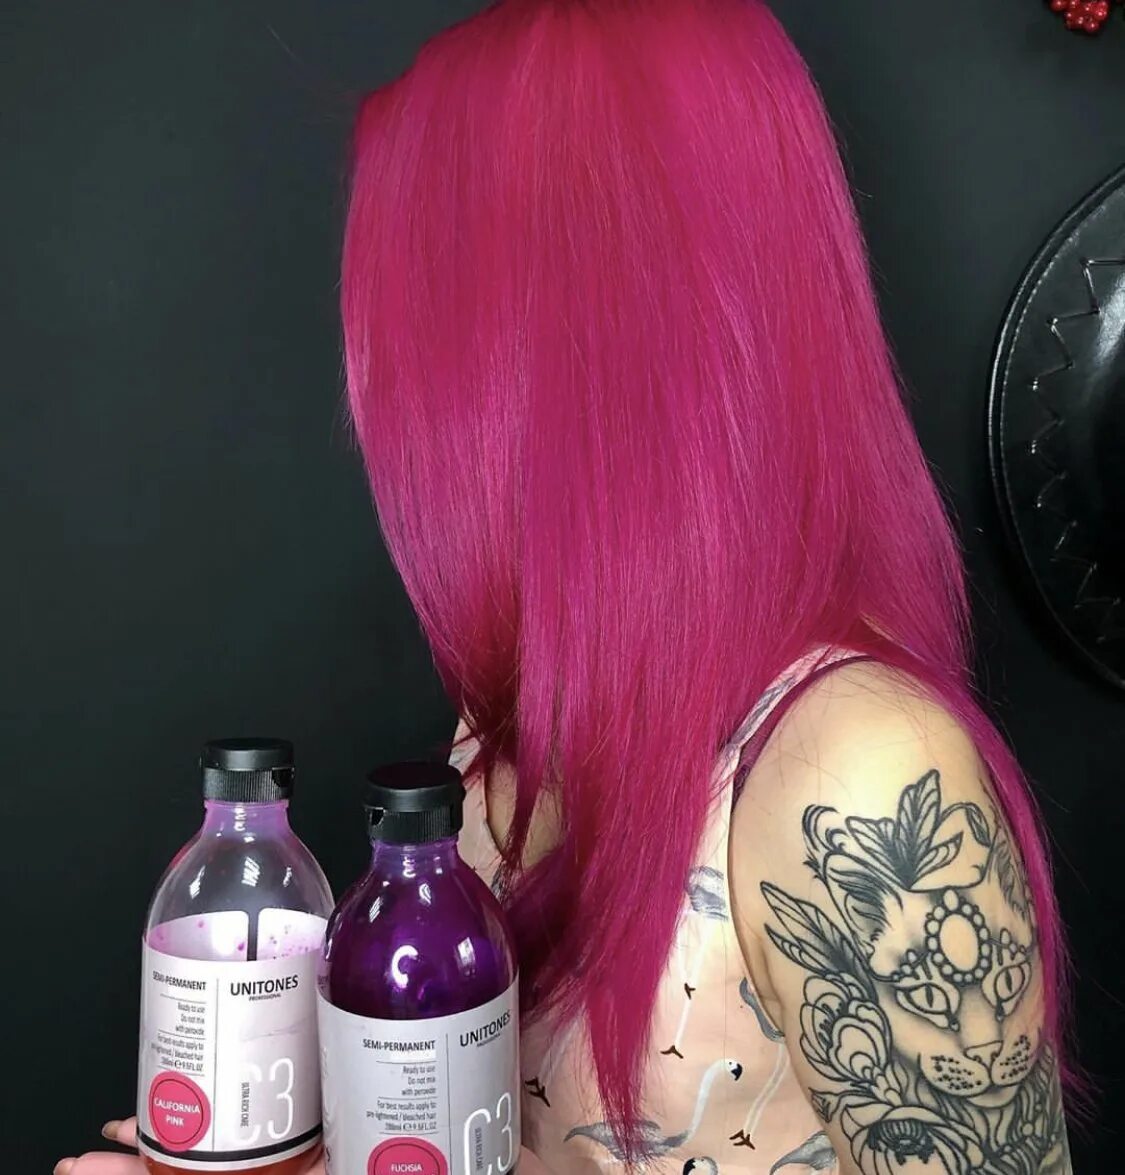 Unitone краска. Разовая покраска для волос. Розовая краска для волос. Рощовая краска длятволос.